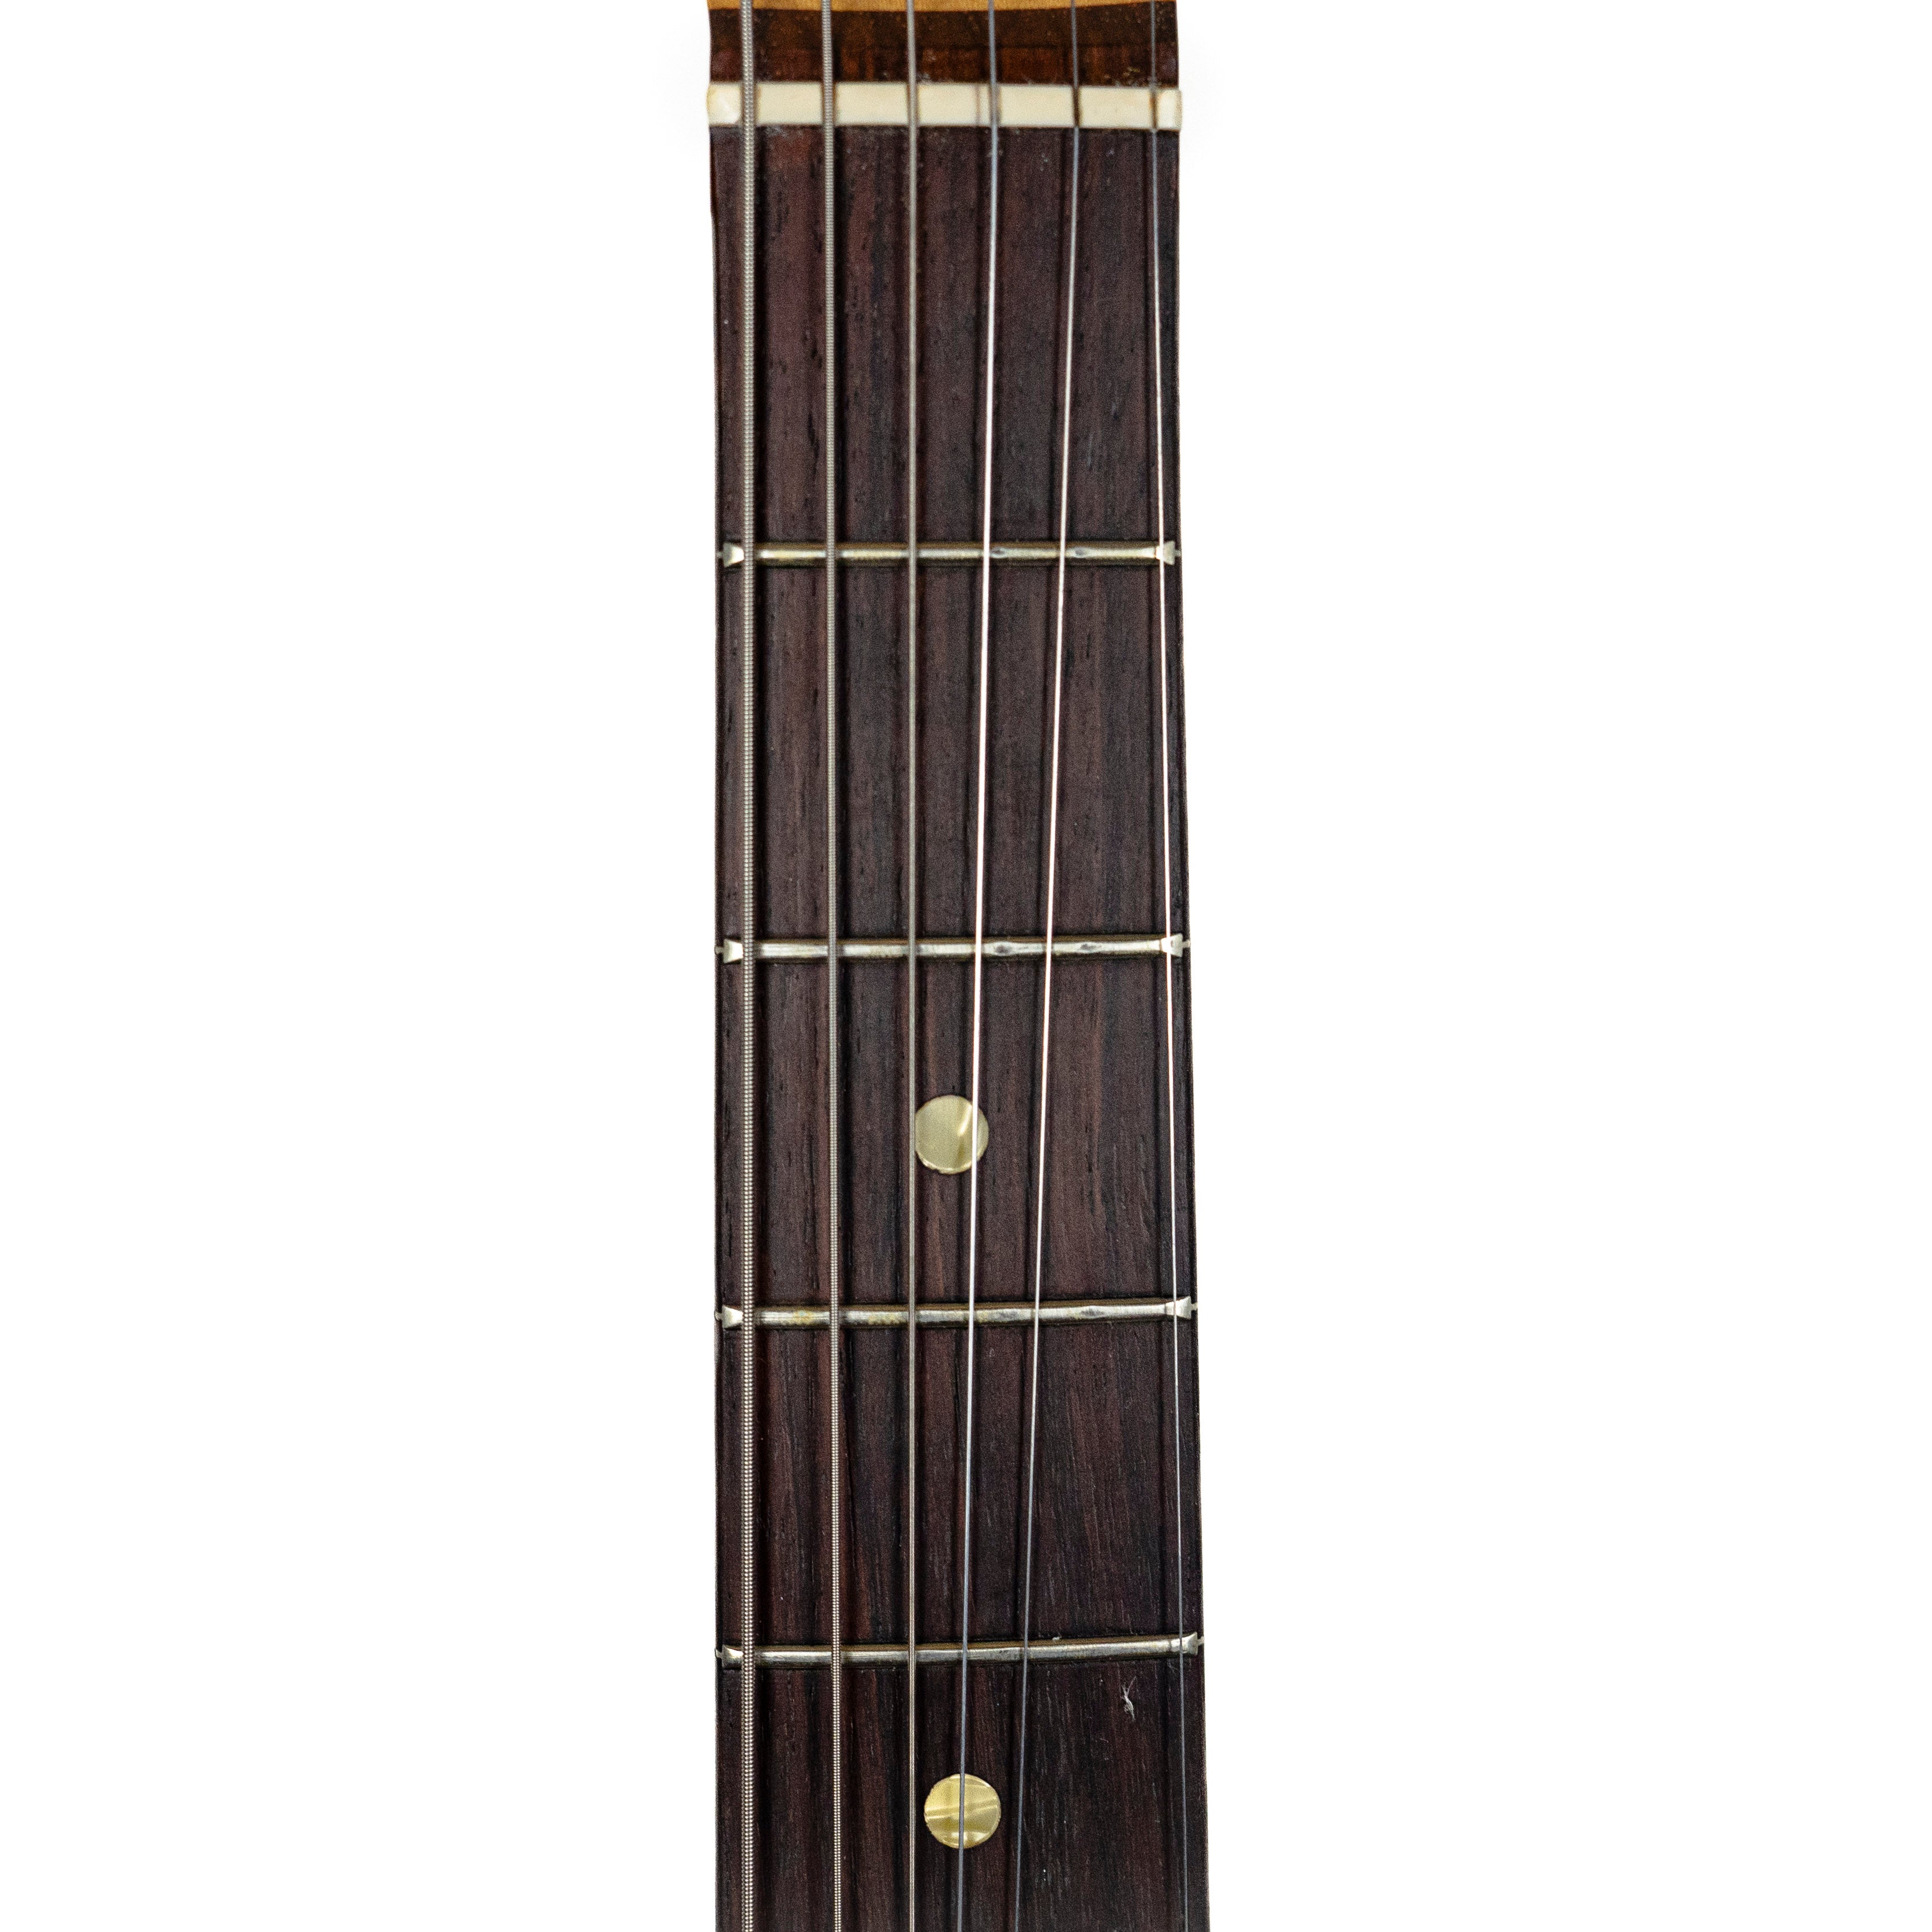 Fender 1971 Strat Sunburst